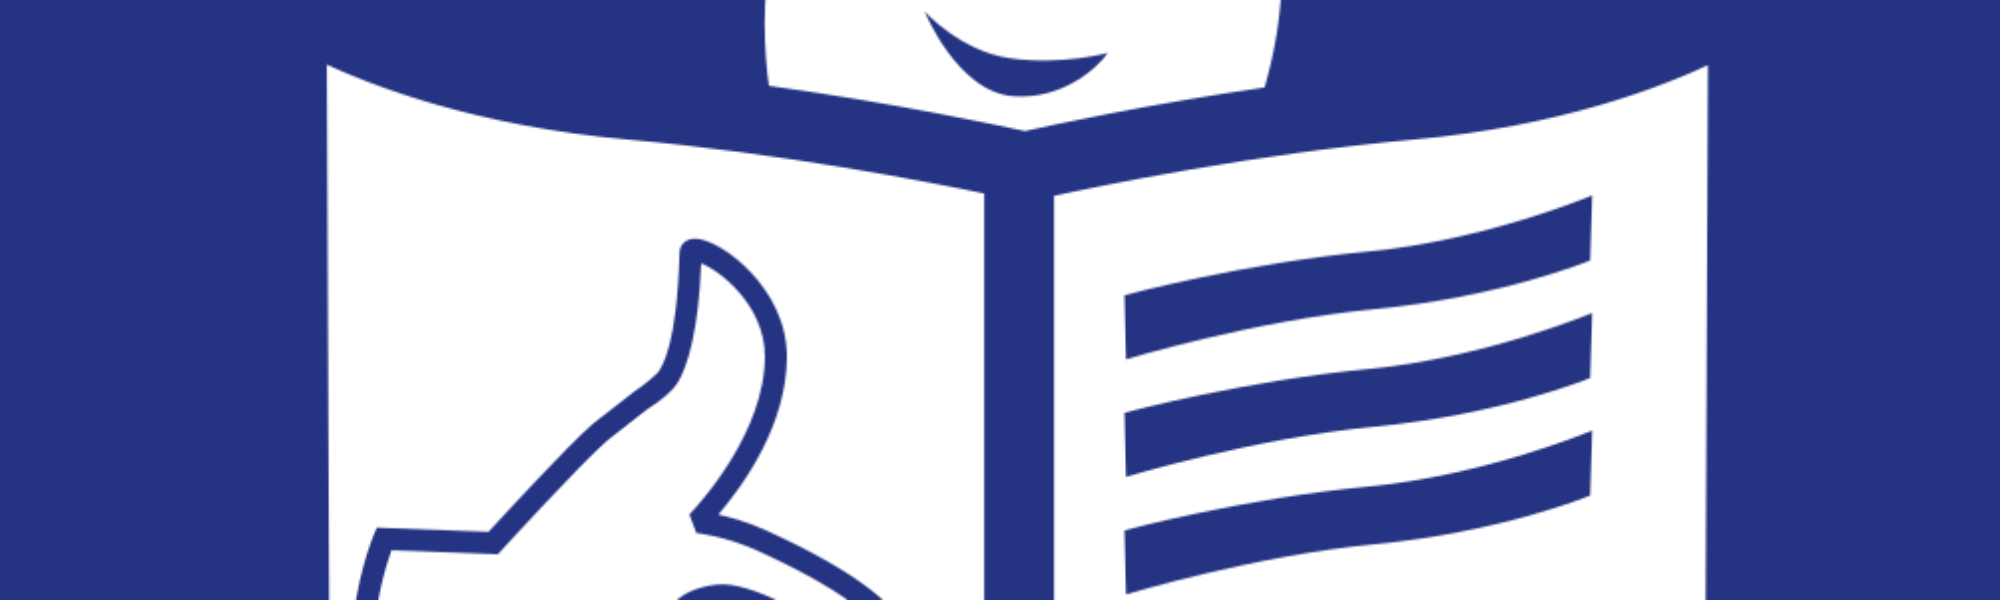 Europäisches Logo für Leichtes Lesen von Inclusion Europe. Das Logo ist blau und zeigt einen stilisierten Kopf über einer aufgeschlagenen Zeitung. Auf dem linken Blatt der Zeitung ist ein 